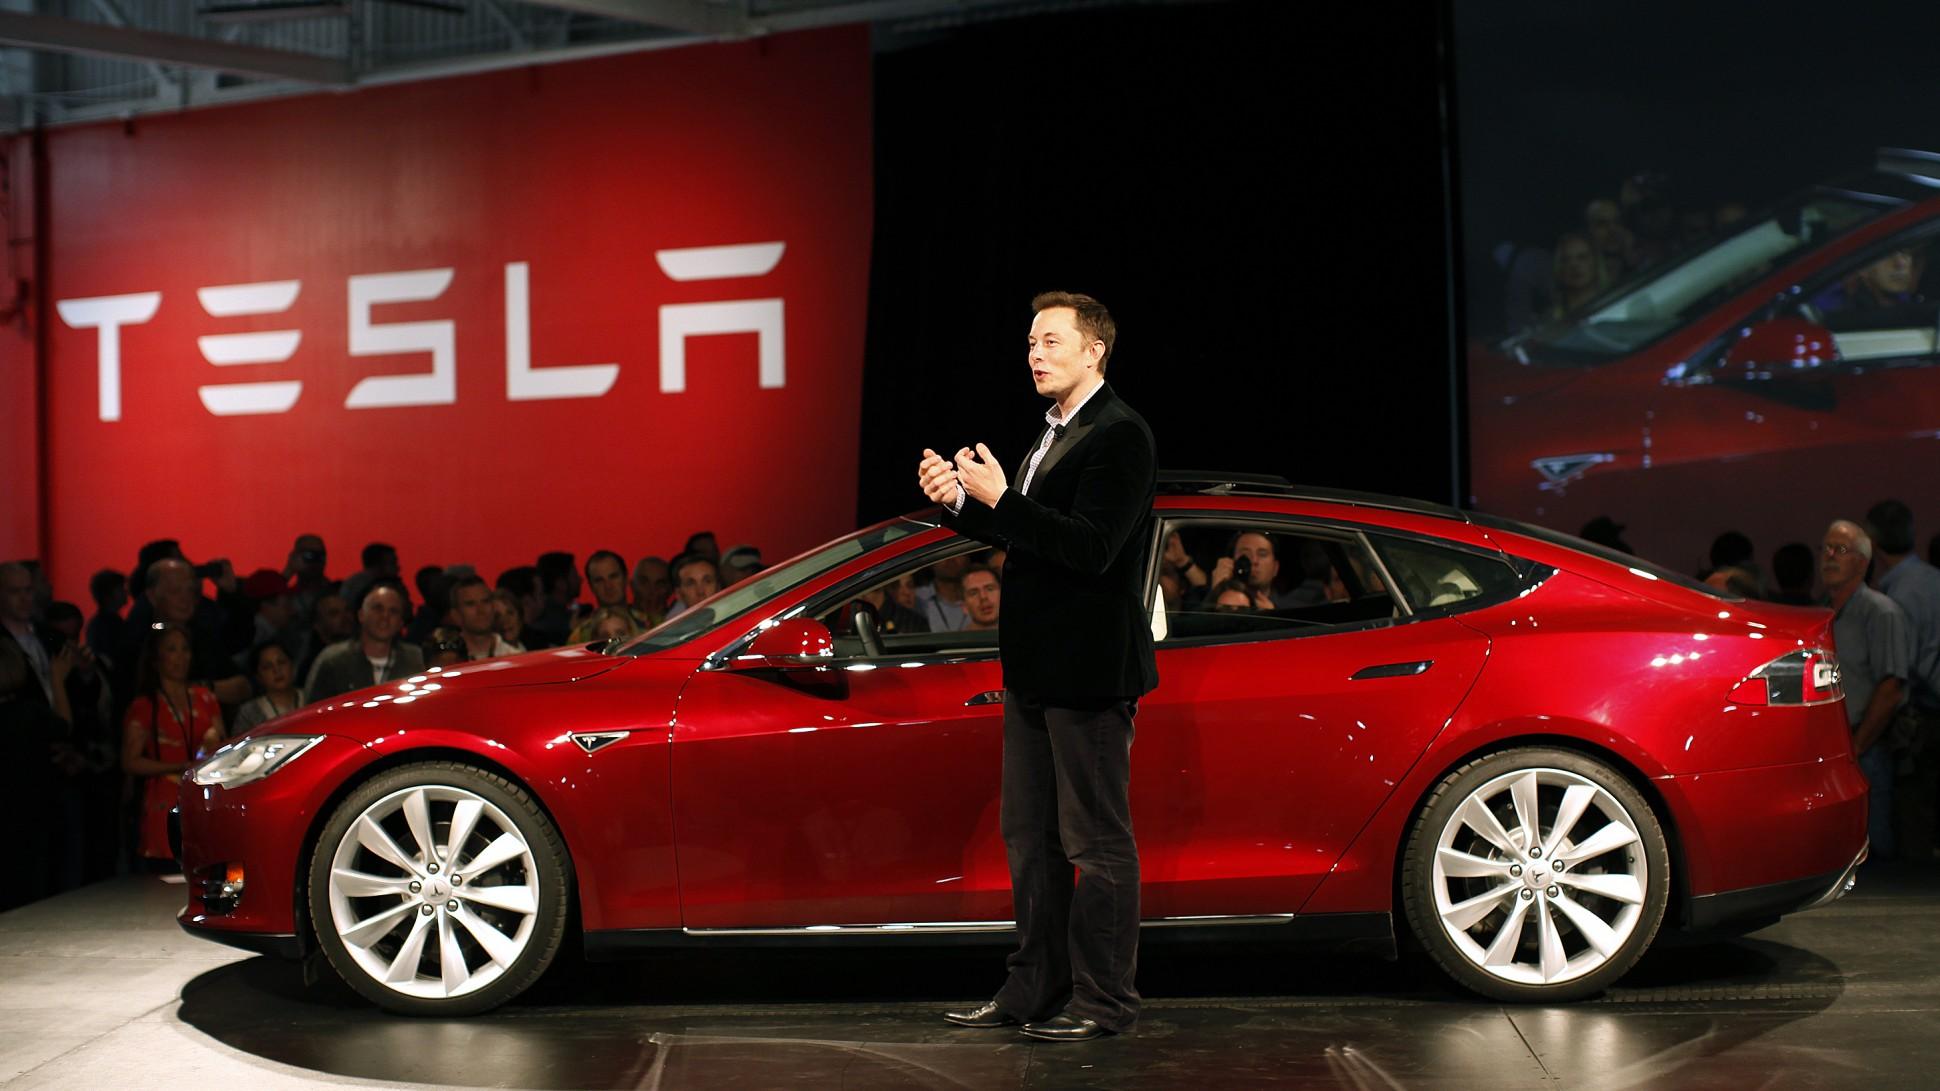 Elon Musk à côté d'une voiture Tesla